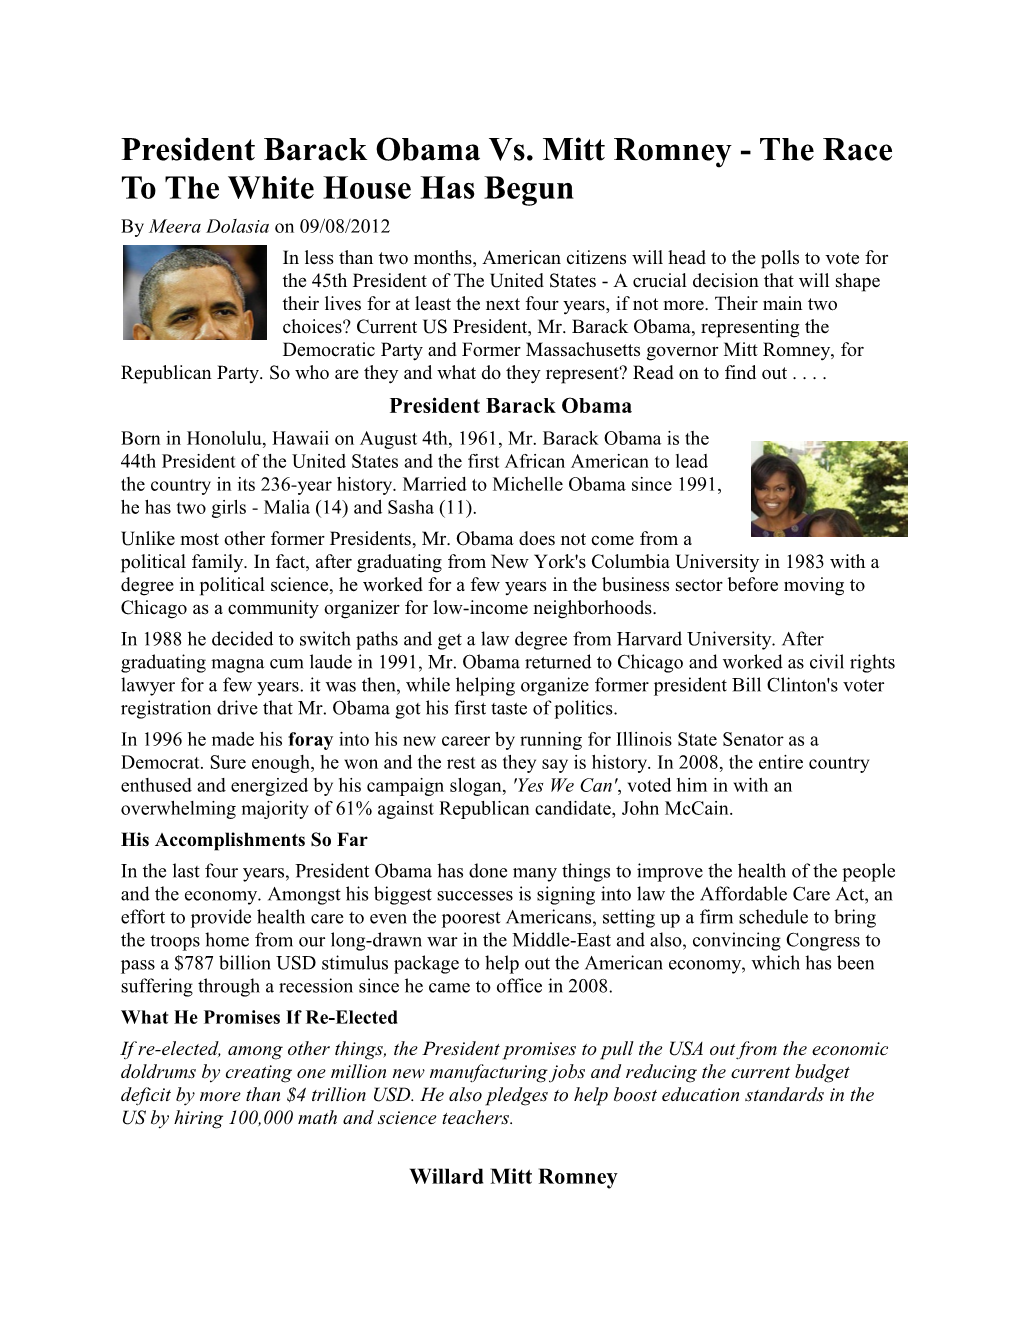 President Barack Obama Vs. Mitt Romney - the Race to the White House Has Begun